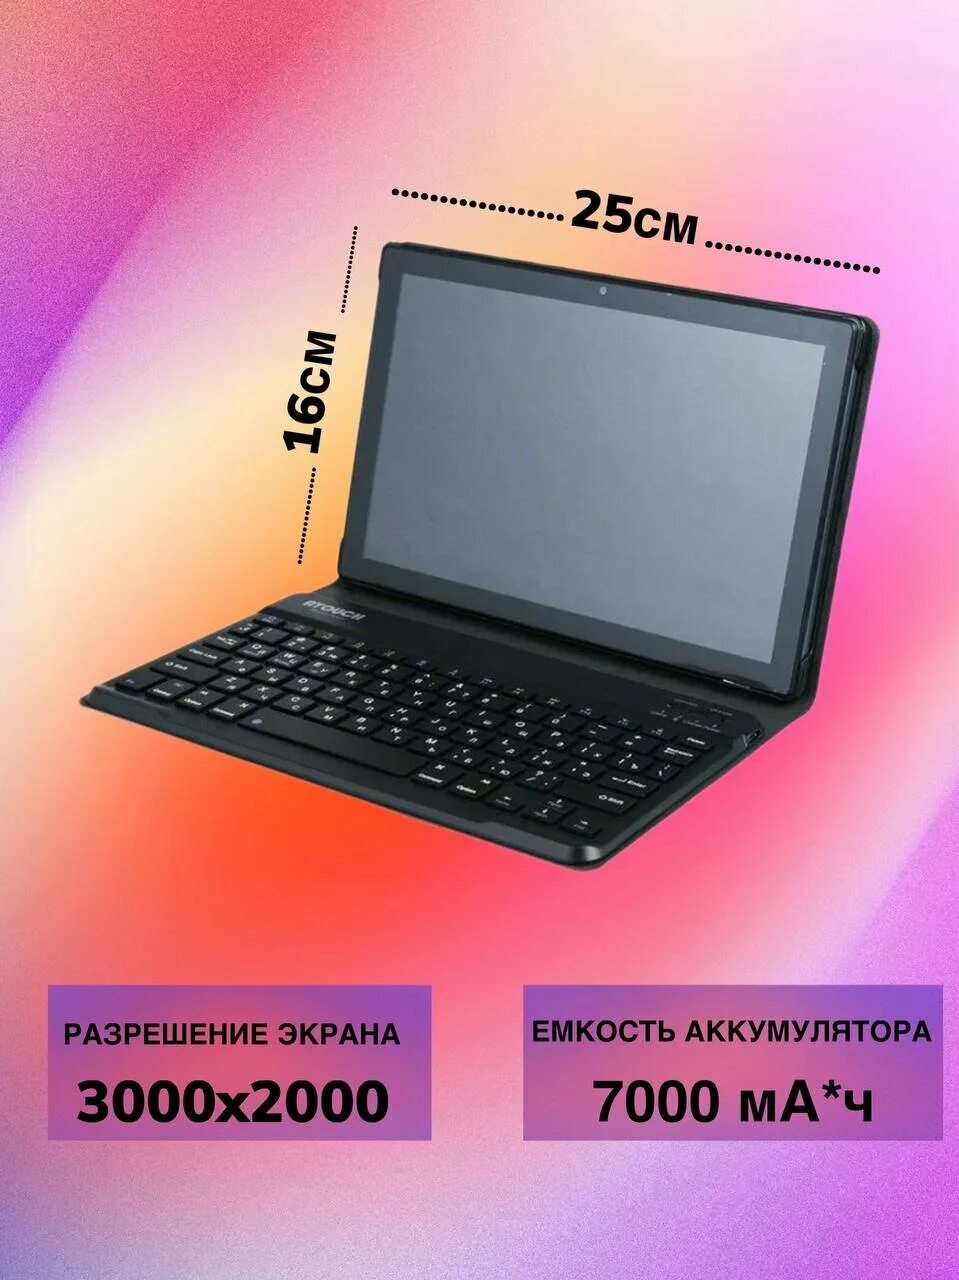 Atouch x19pro планшет. Планшет ATOUCH. ATOUCH S-tab1. ATOUCH se Pro 5g Network планшет. ATOUCH x19pro планшет с клавиатурой цена.